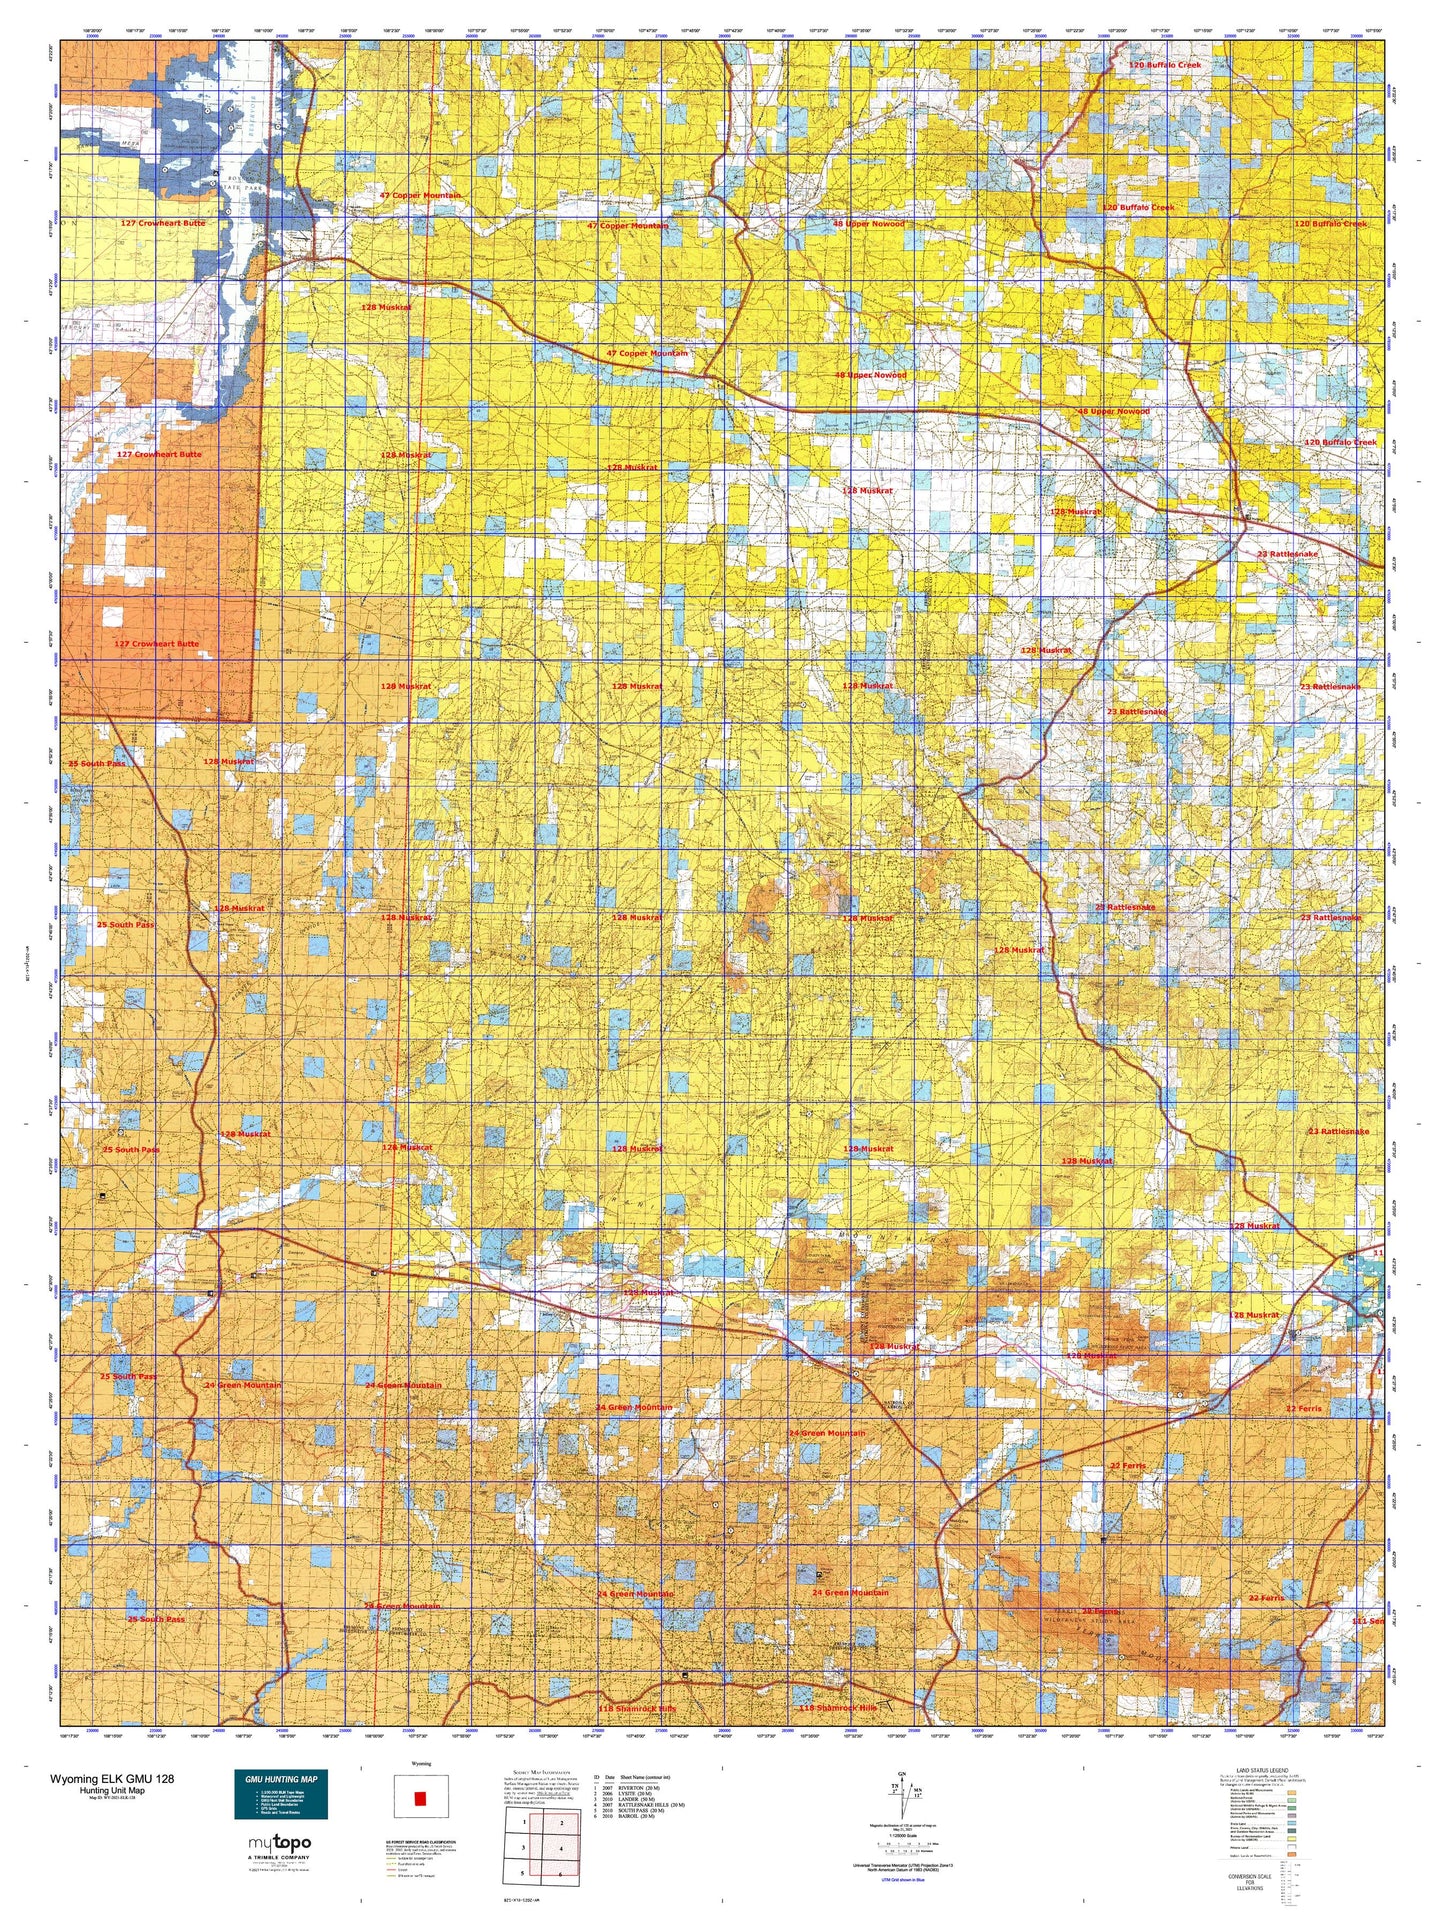 Wyoming Elk GMU 128 Map Image